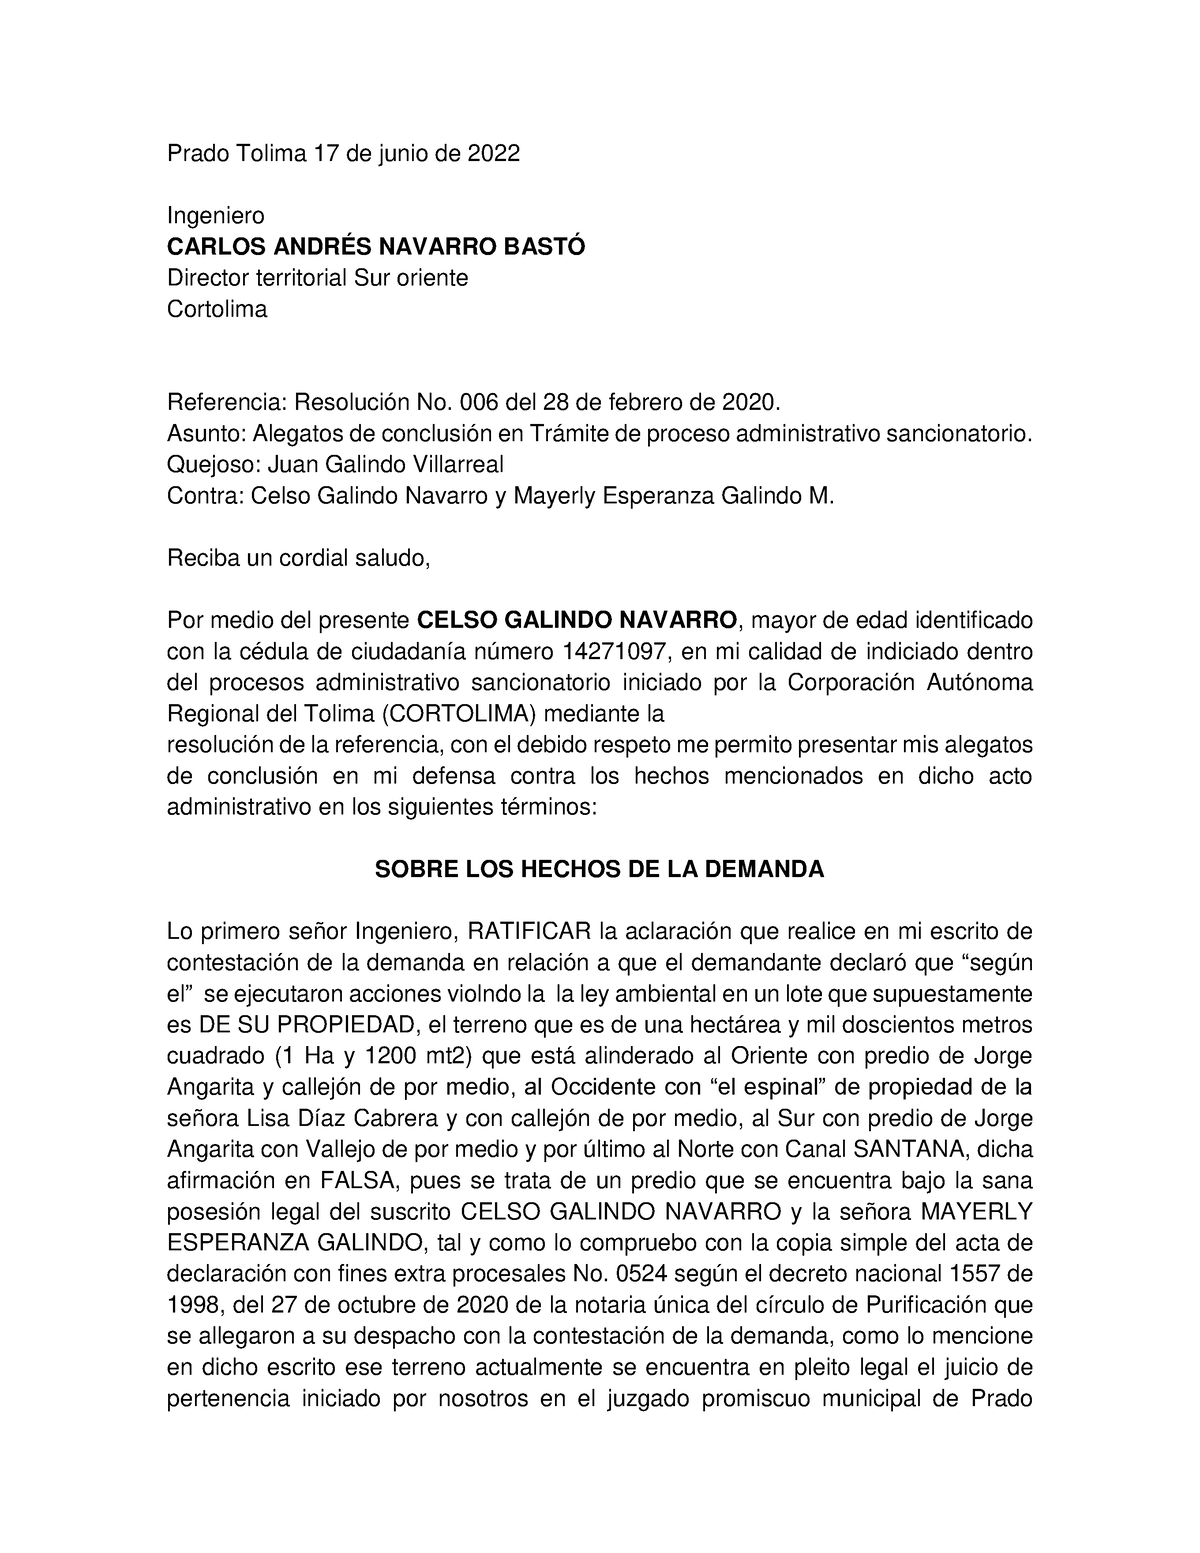 Alegatos de conclusion - Prado Tolima 17 de junio de 2022 Ingeniero CARLOS  ANDRÉS NAVARRO BASTÓ - Studocu